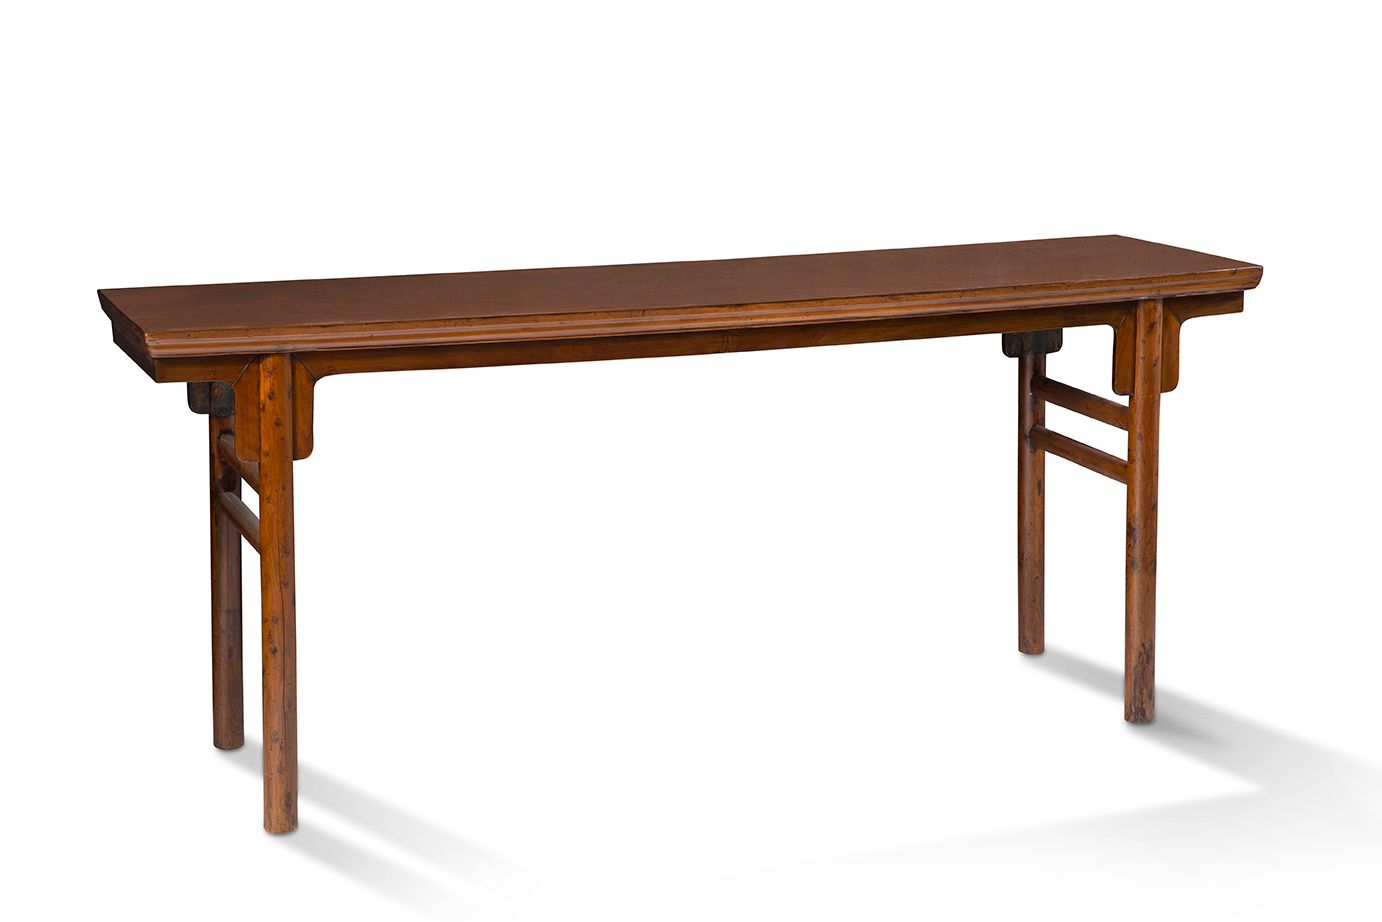 CHINE XVIIe-XVIIIe SIÈCLE Table pingtou'an
En bois naturel, possiblement en huan&hellip;